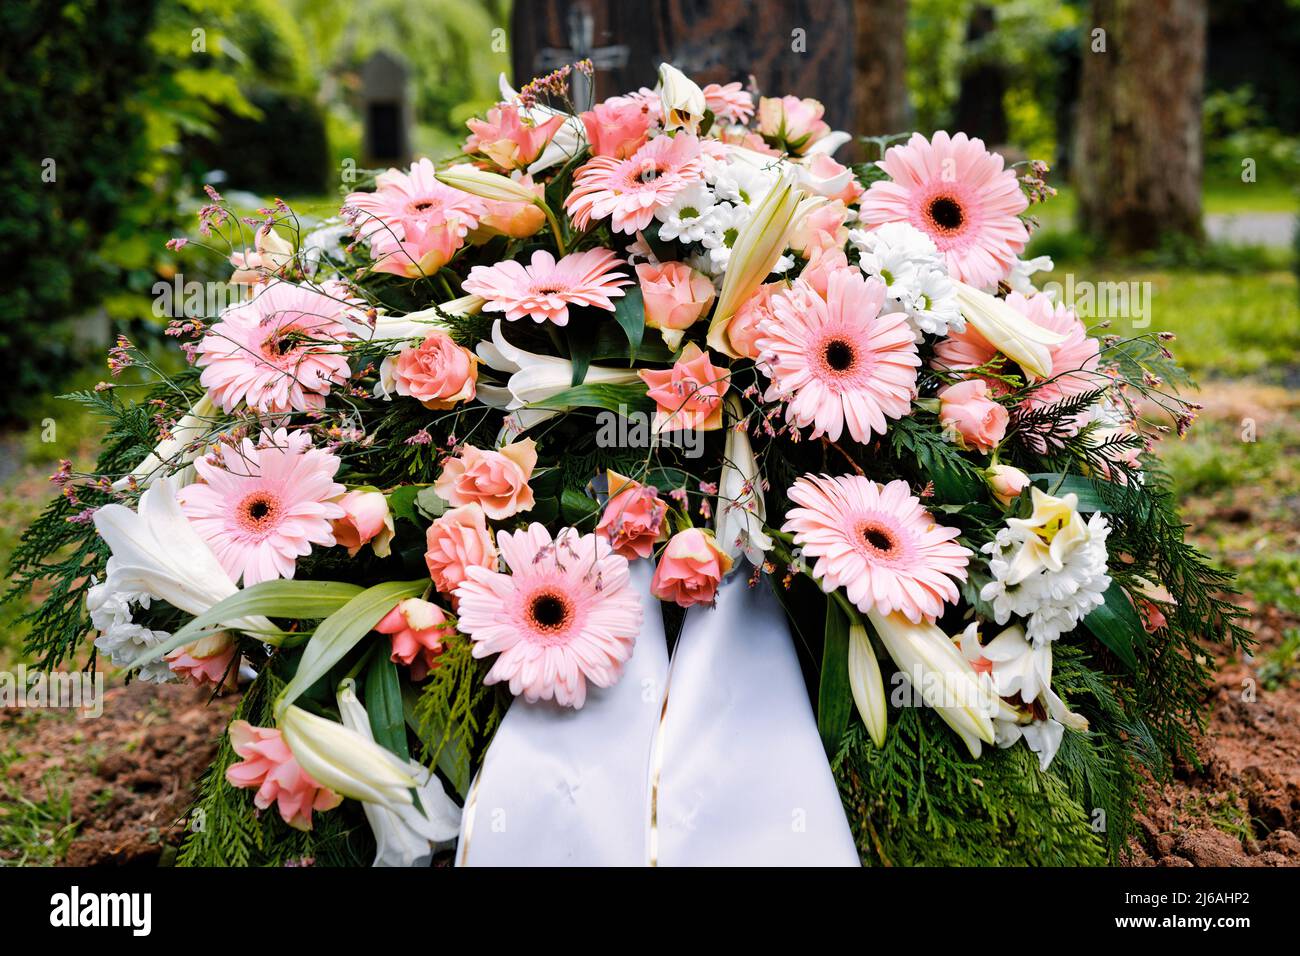 flores de colores pastel en una tumba después de un funeral Foto de stock